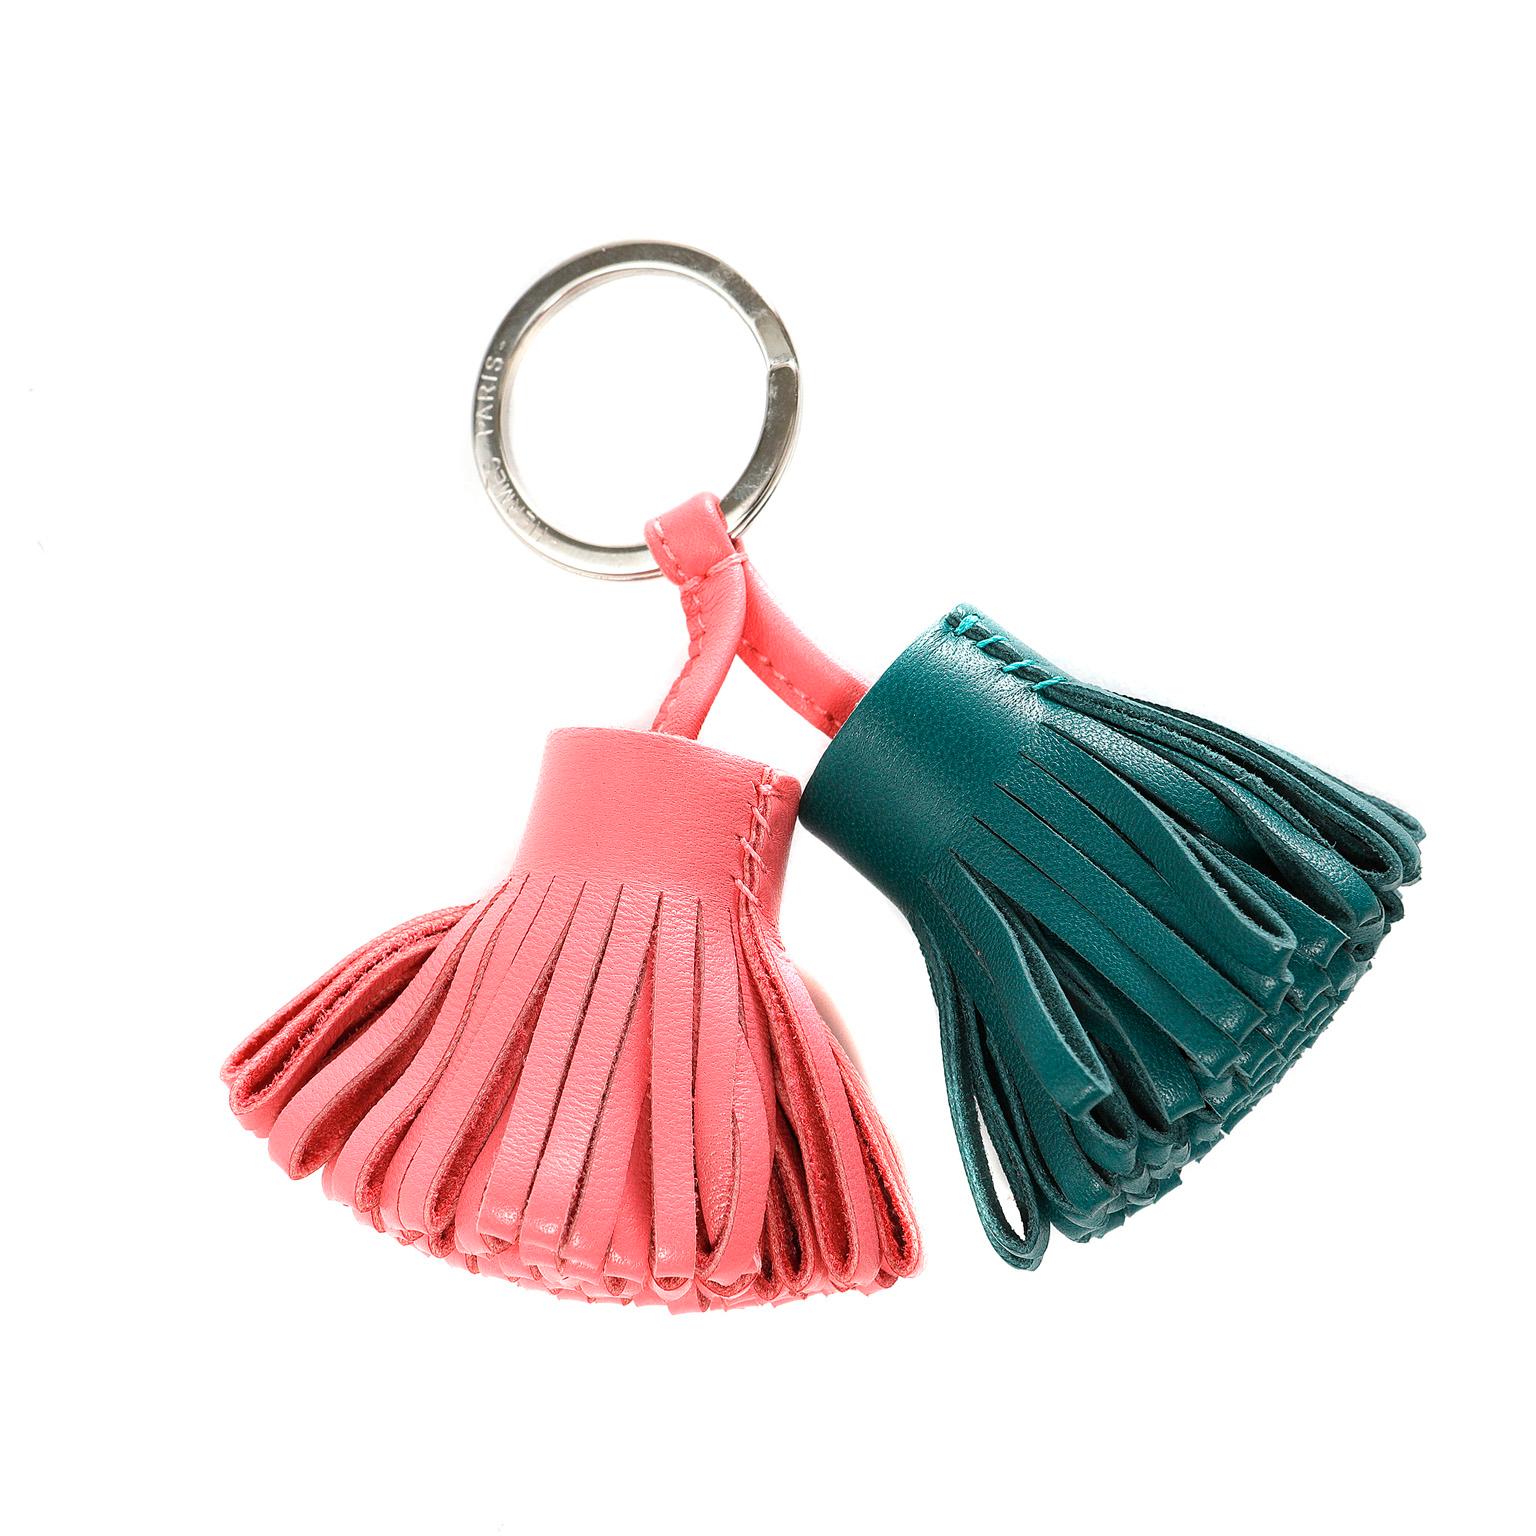 Diese authentische Hermès Rosa und Grün Leder Double Tassel Key Holder ist in tadellosem Zustand.  Der silberne Schlüsselring hält zwei Quasten aus Leder mit Looping in Rosarot und Dunkelgrün. 

PBF 11472